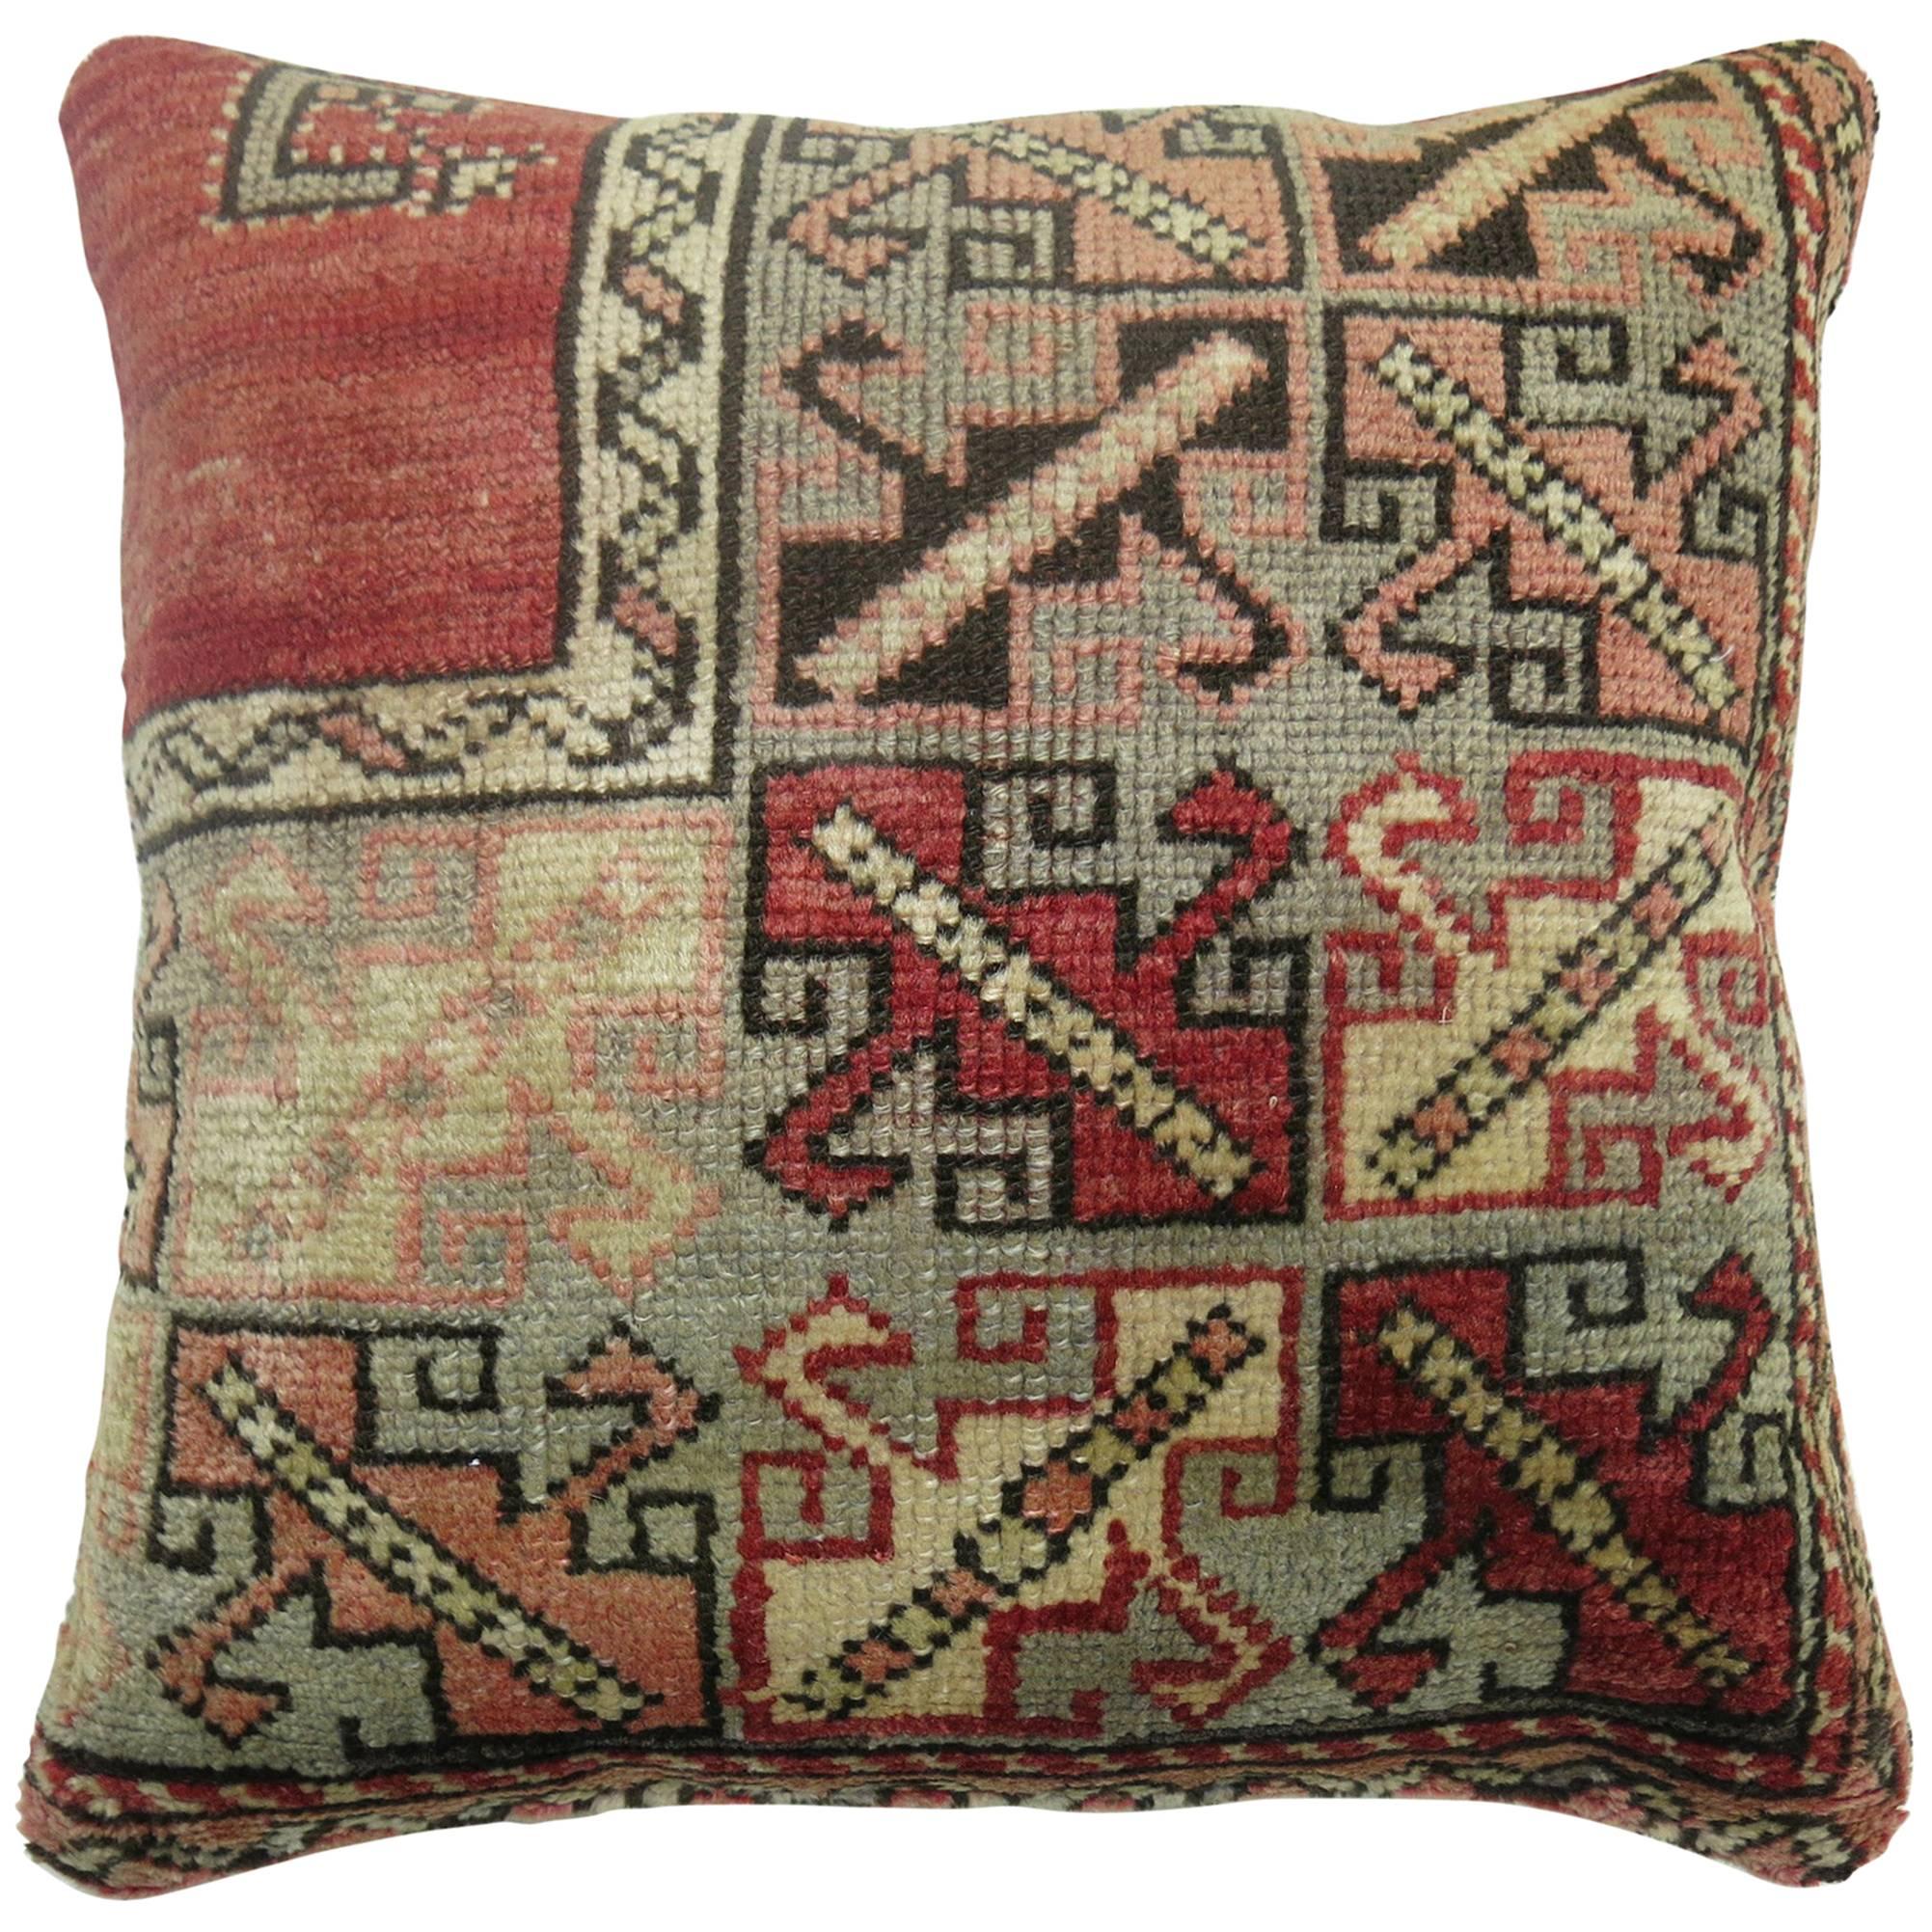 Großes quadratisches rotes türkisches Vintage-Teppichkissen